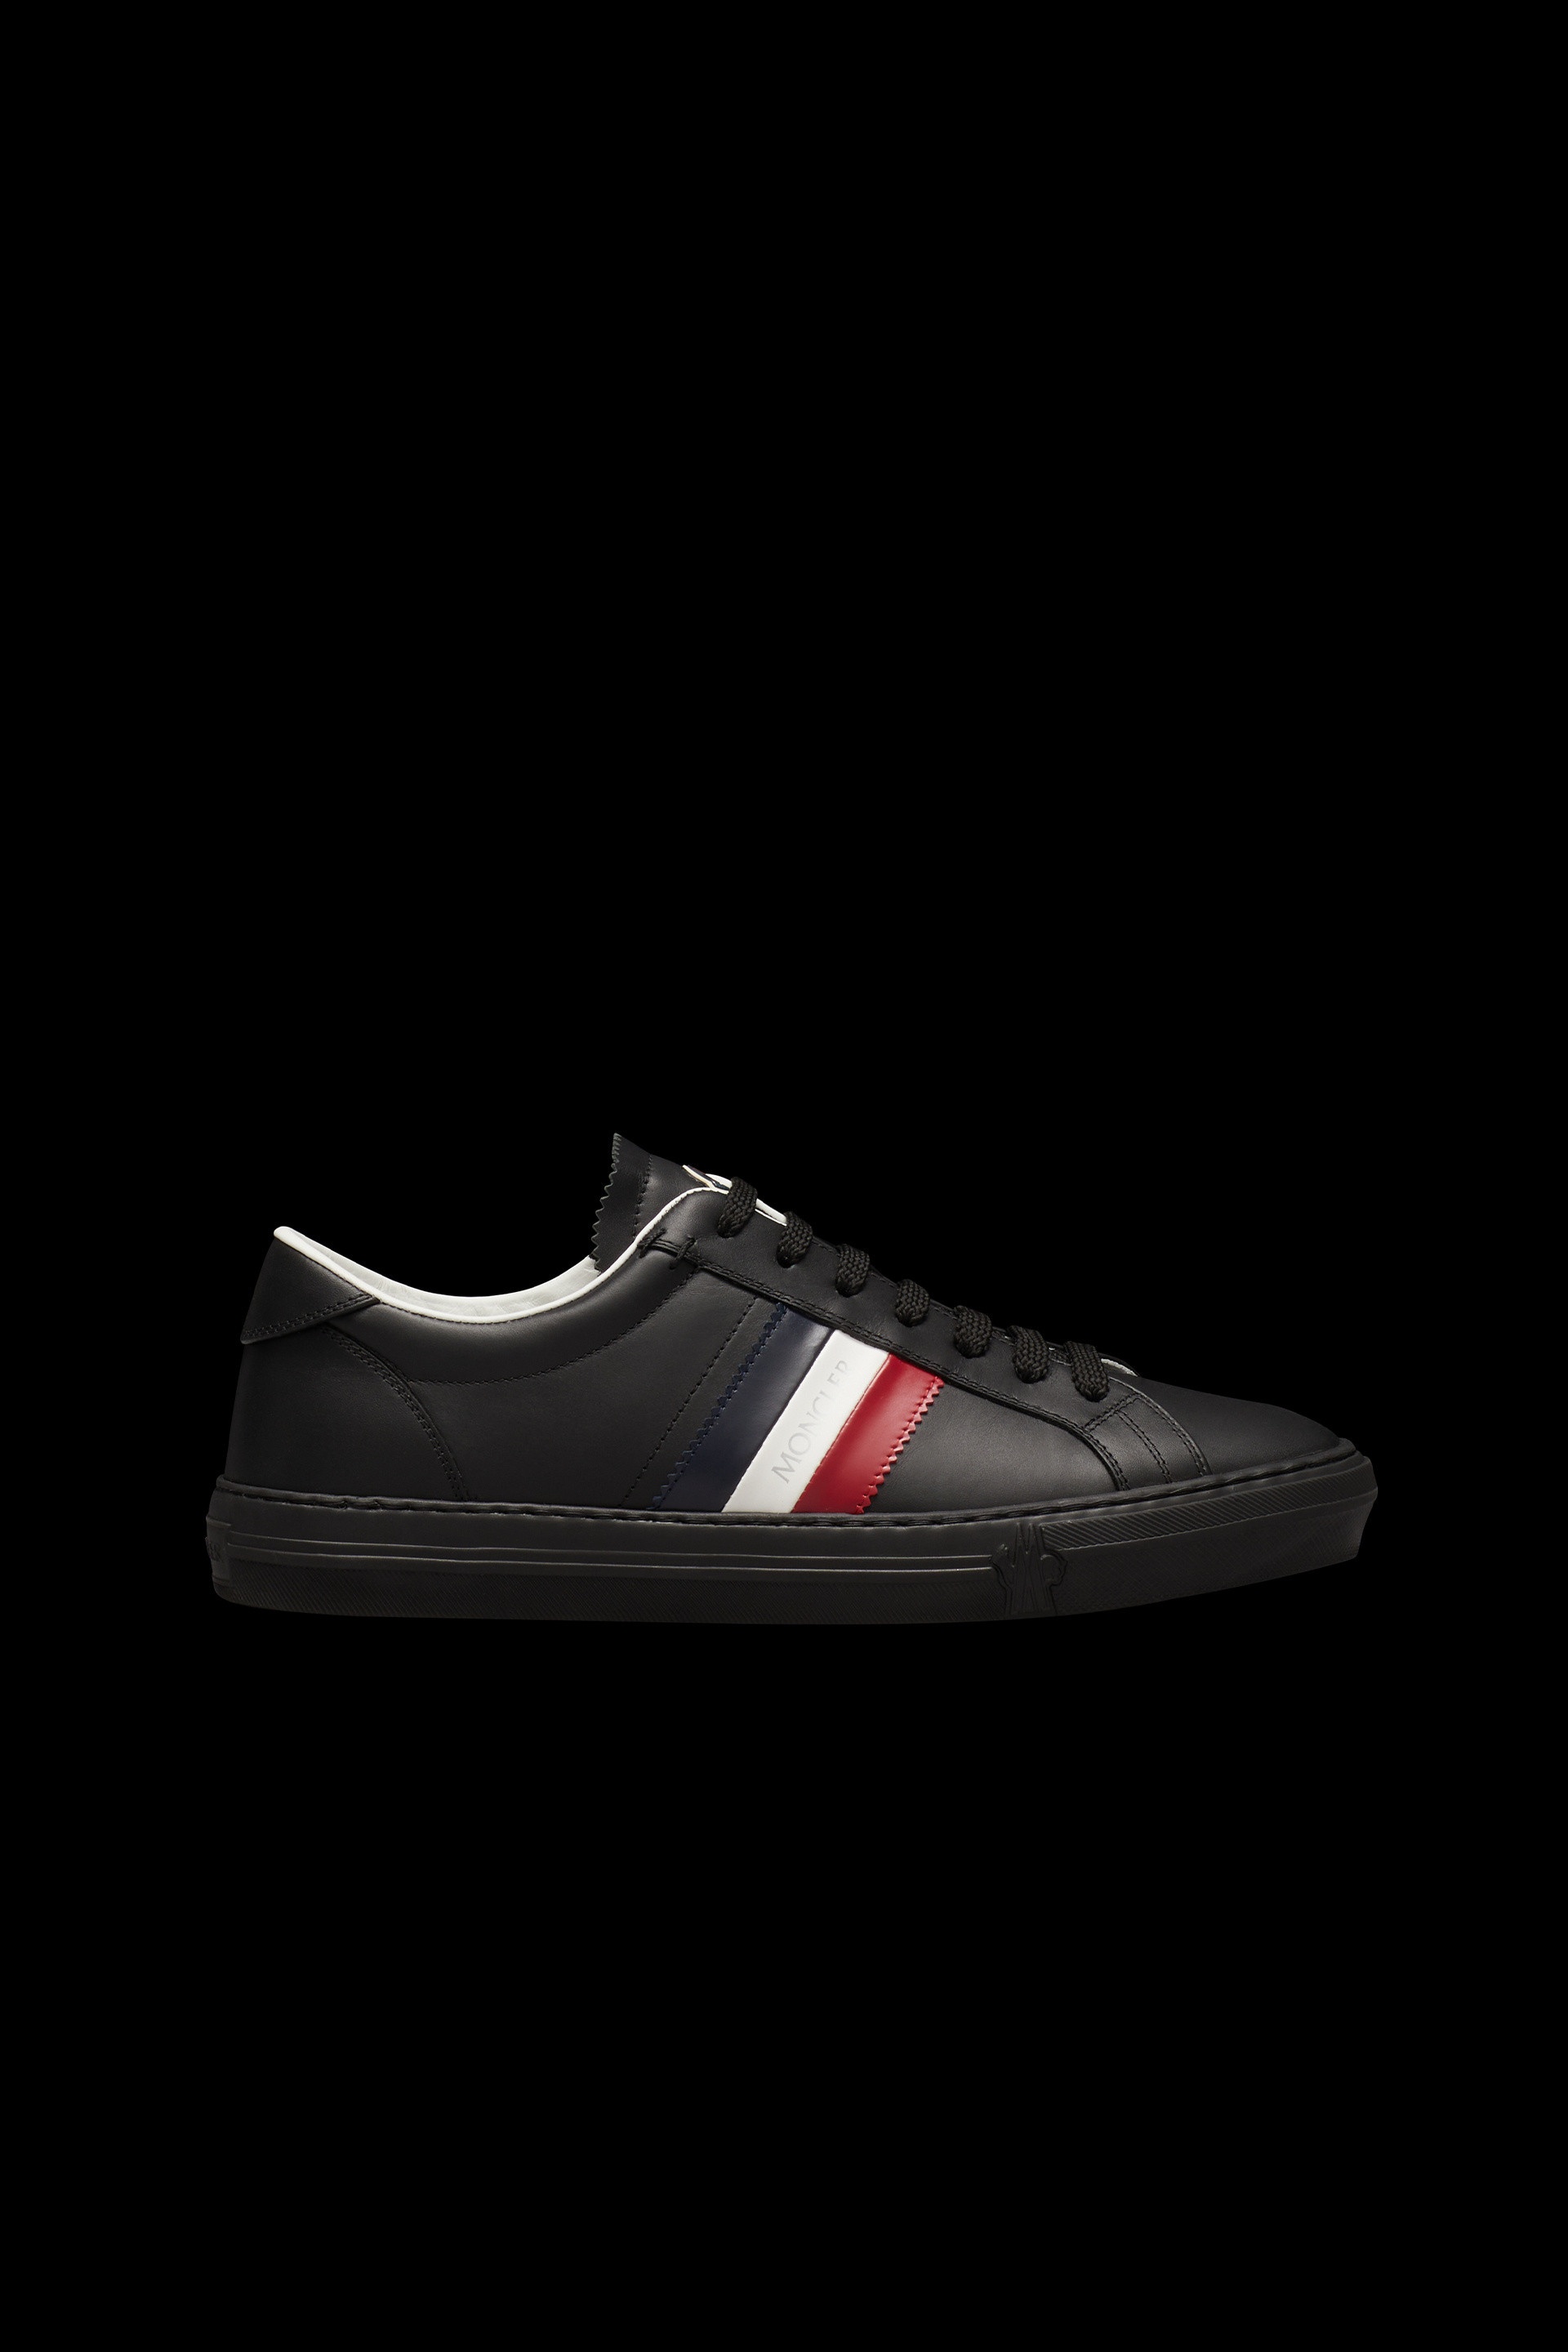 New Monaco Sneakers - 1